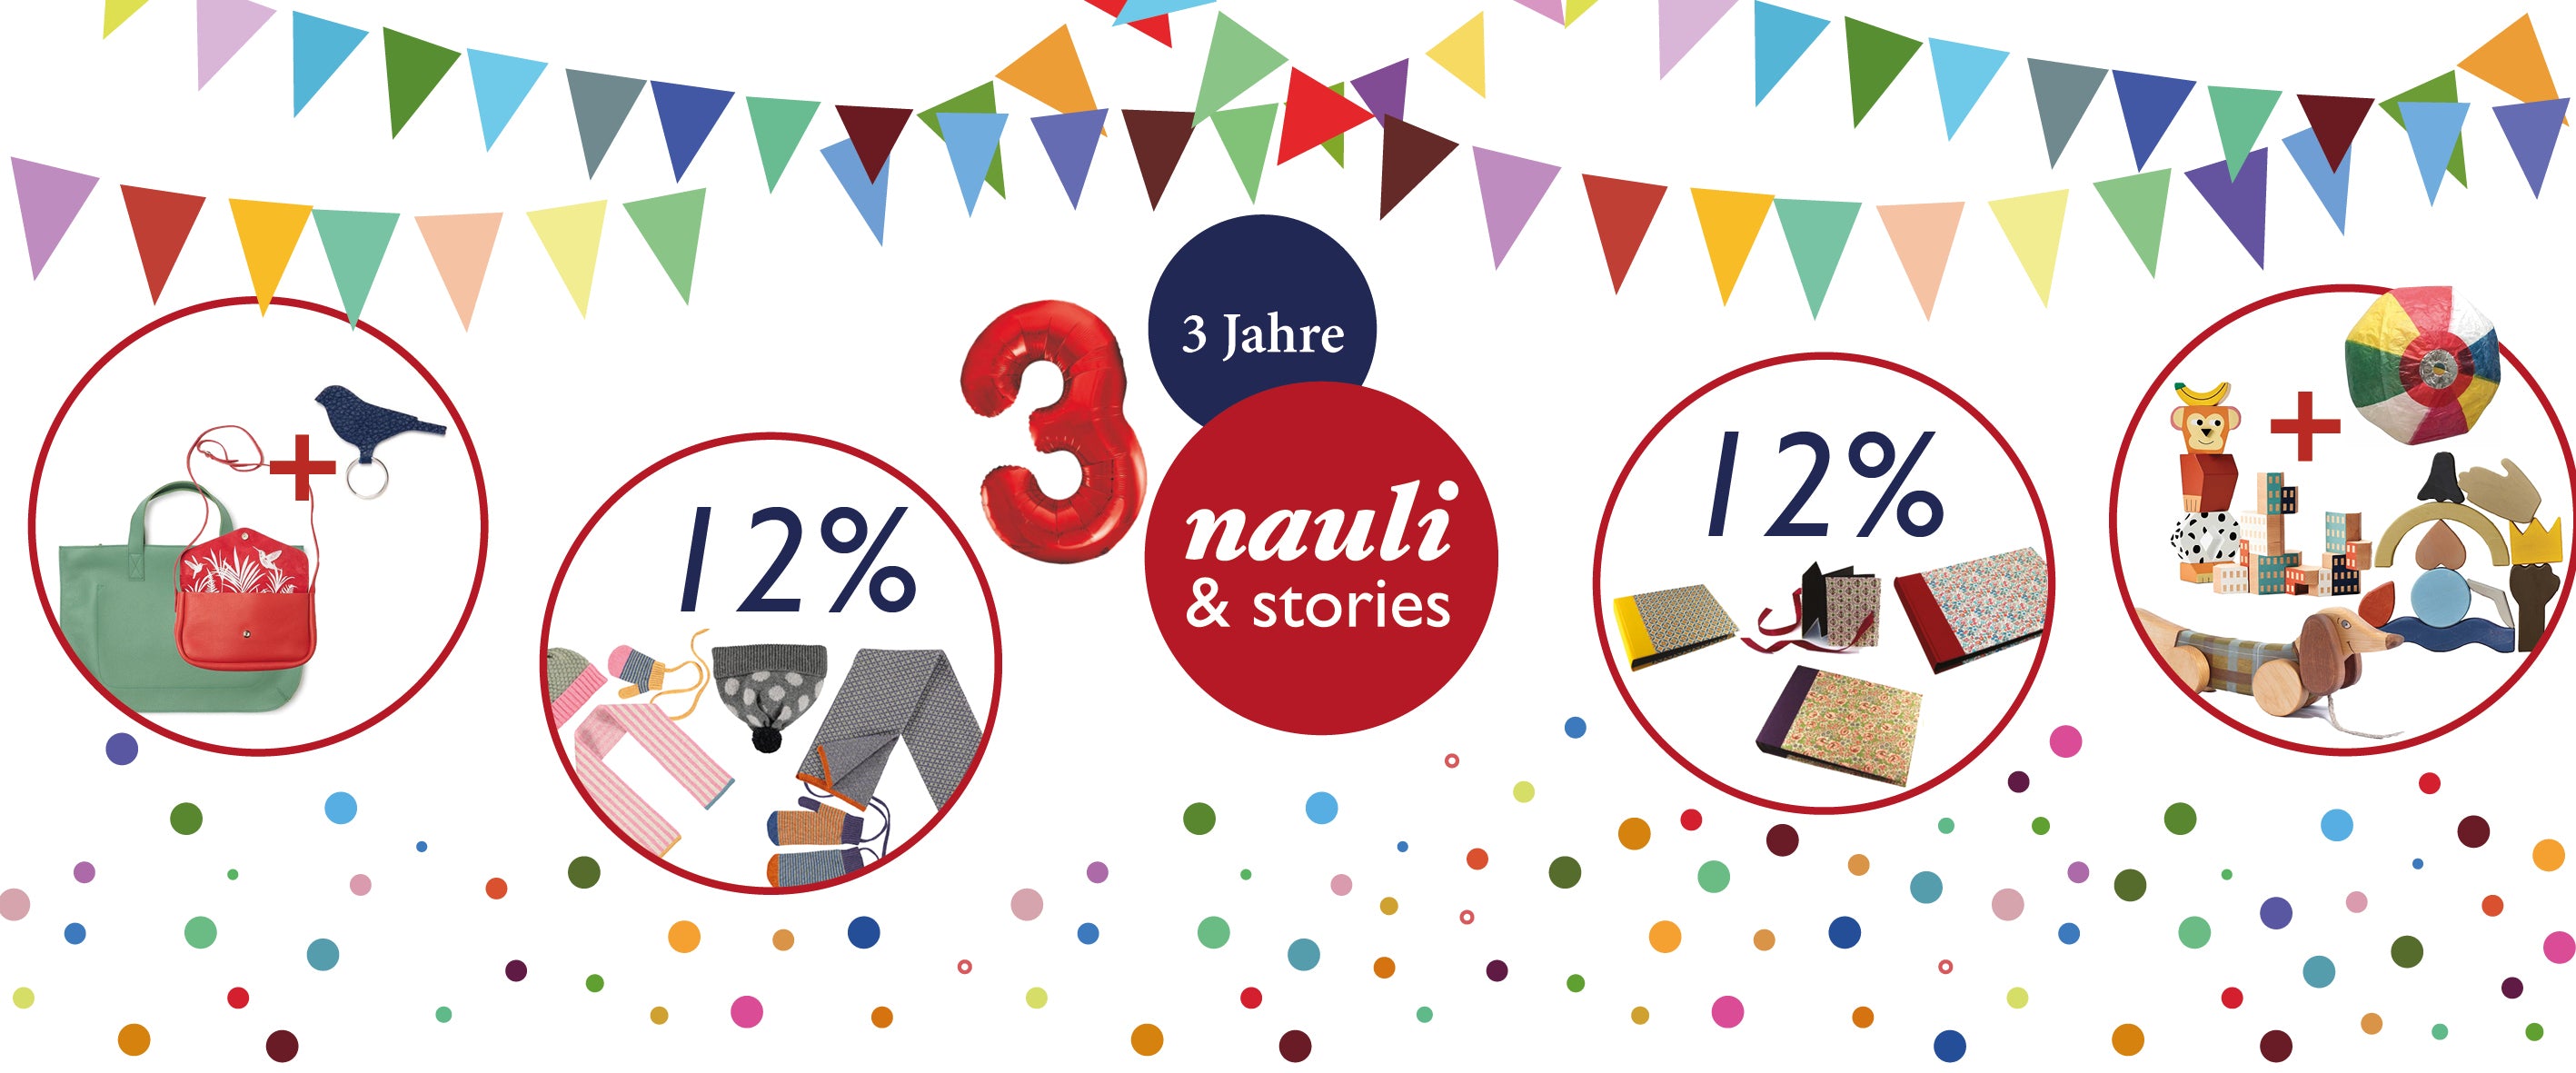 Nauli & Stories in der Maxvorstadt in München feiert 3 Jährigen Geburtstag!